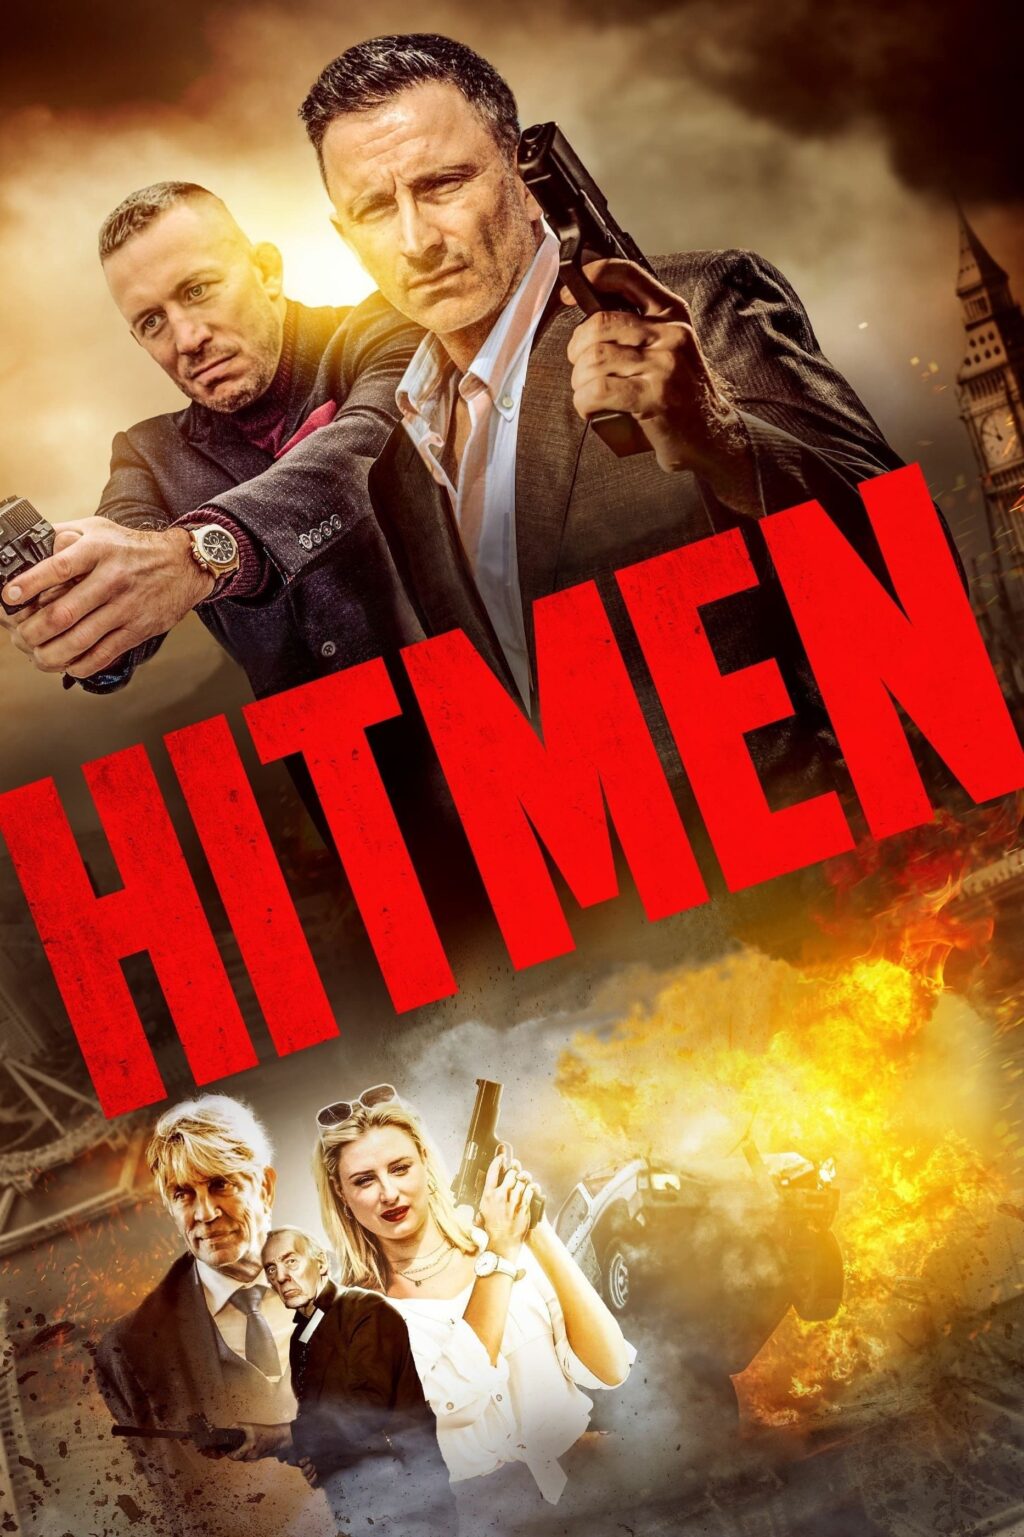 Poster for the movie "Hitmen"